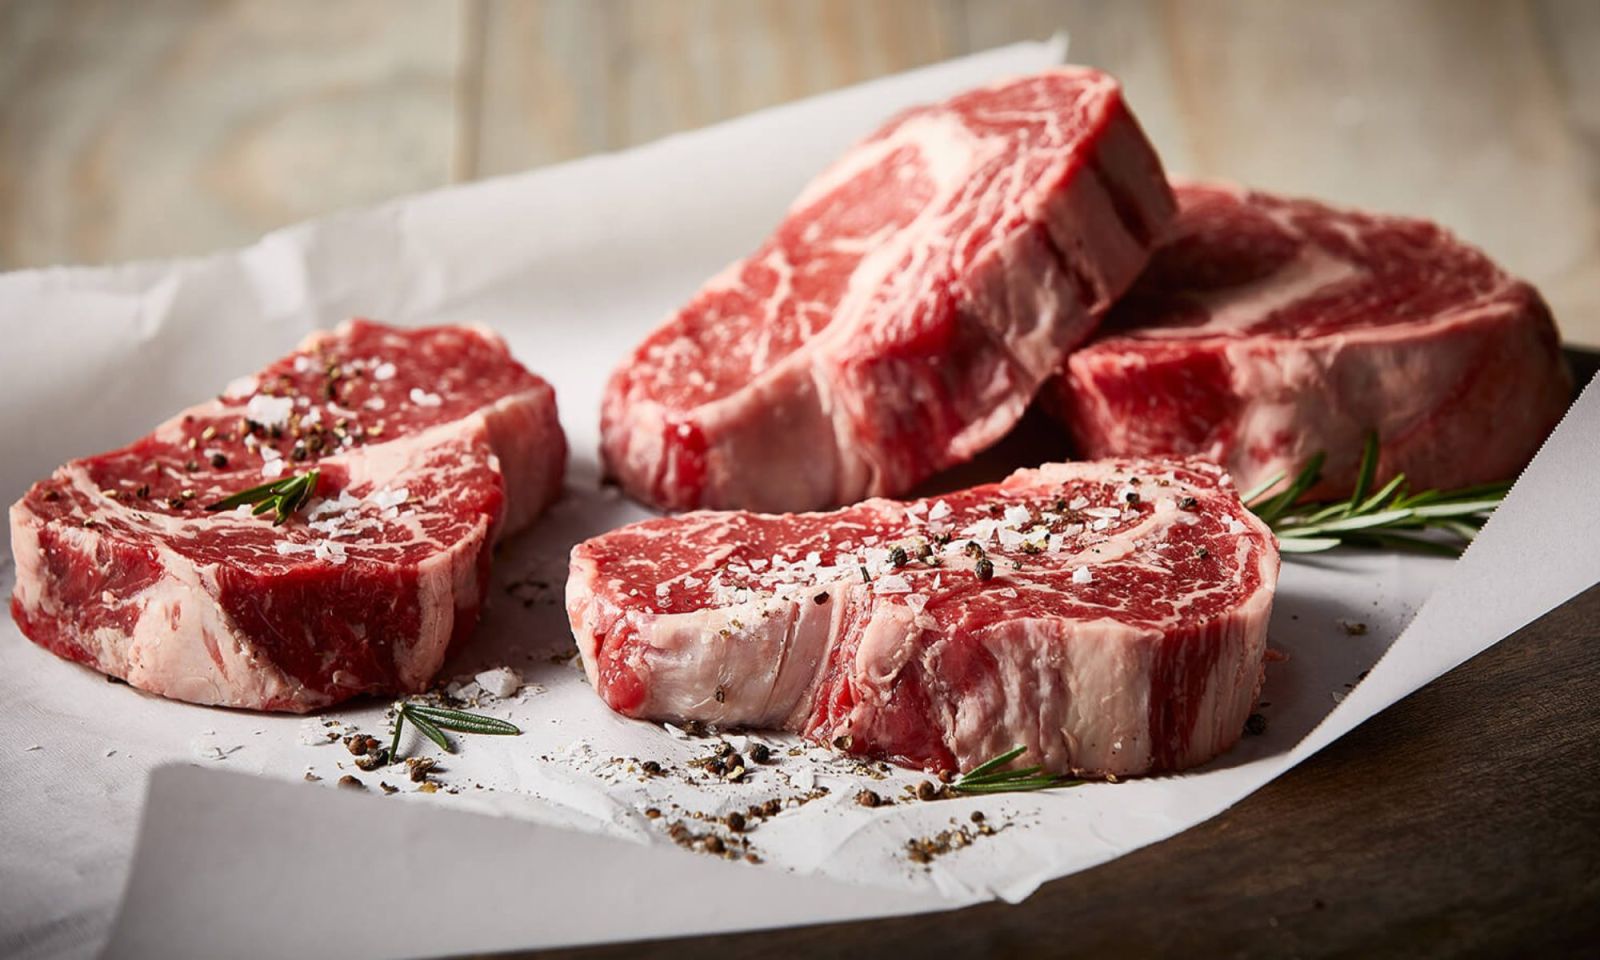 Theo các chuyên gia, 100g thịt bò có hàm lượng calo khoảng 250.5 kcal